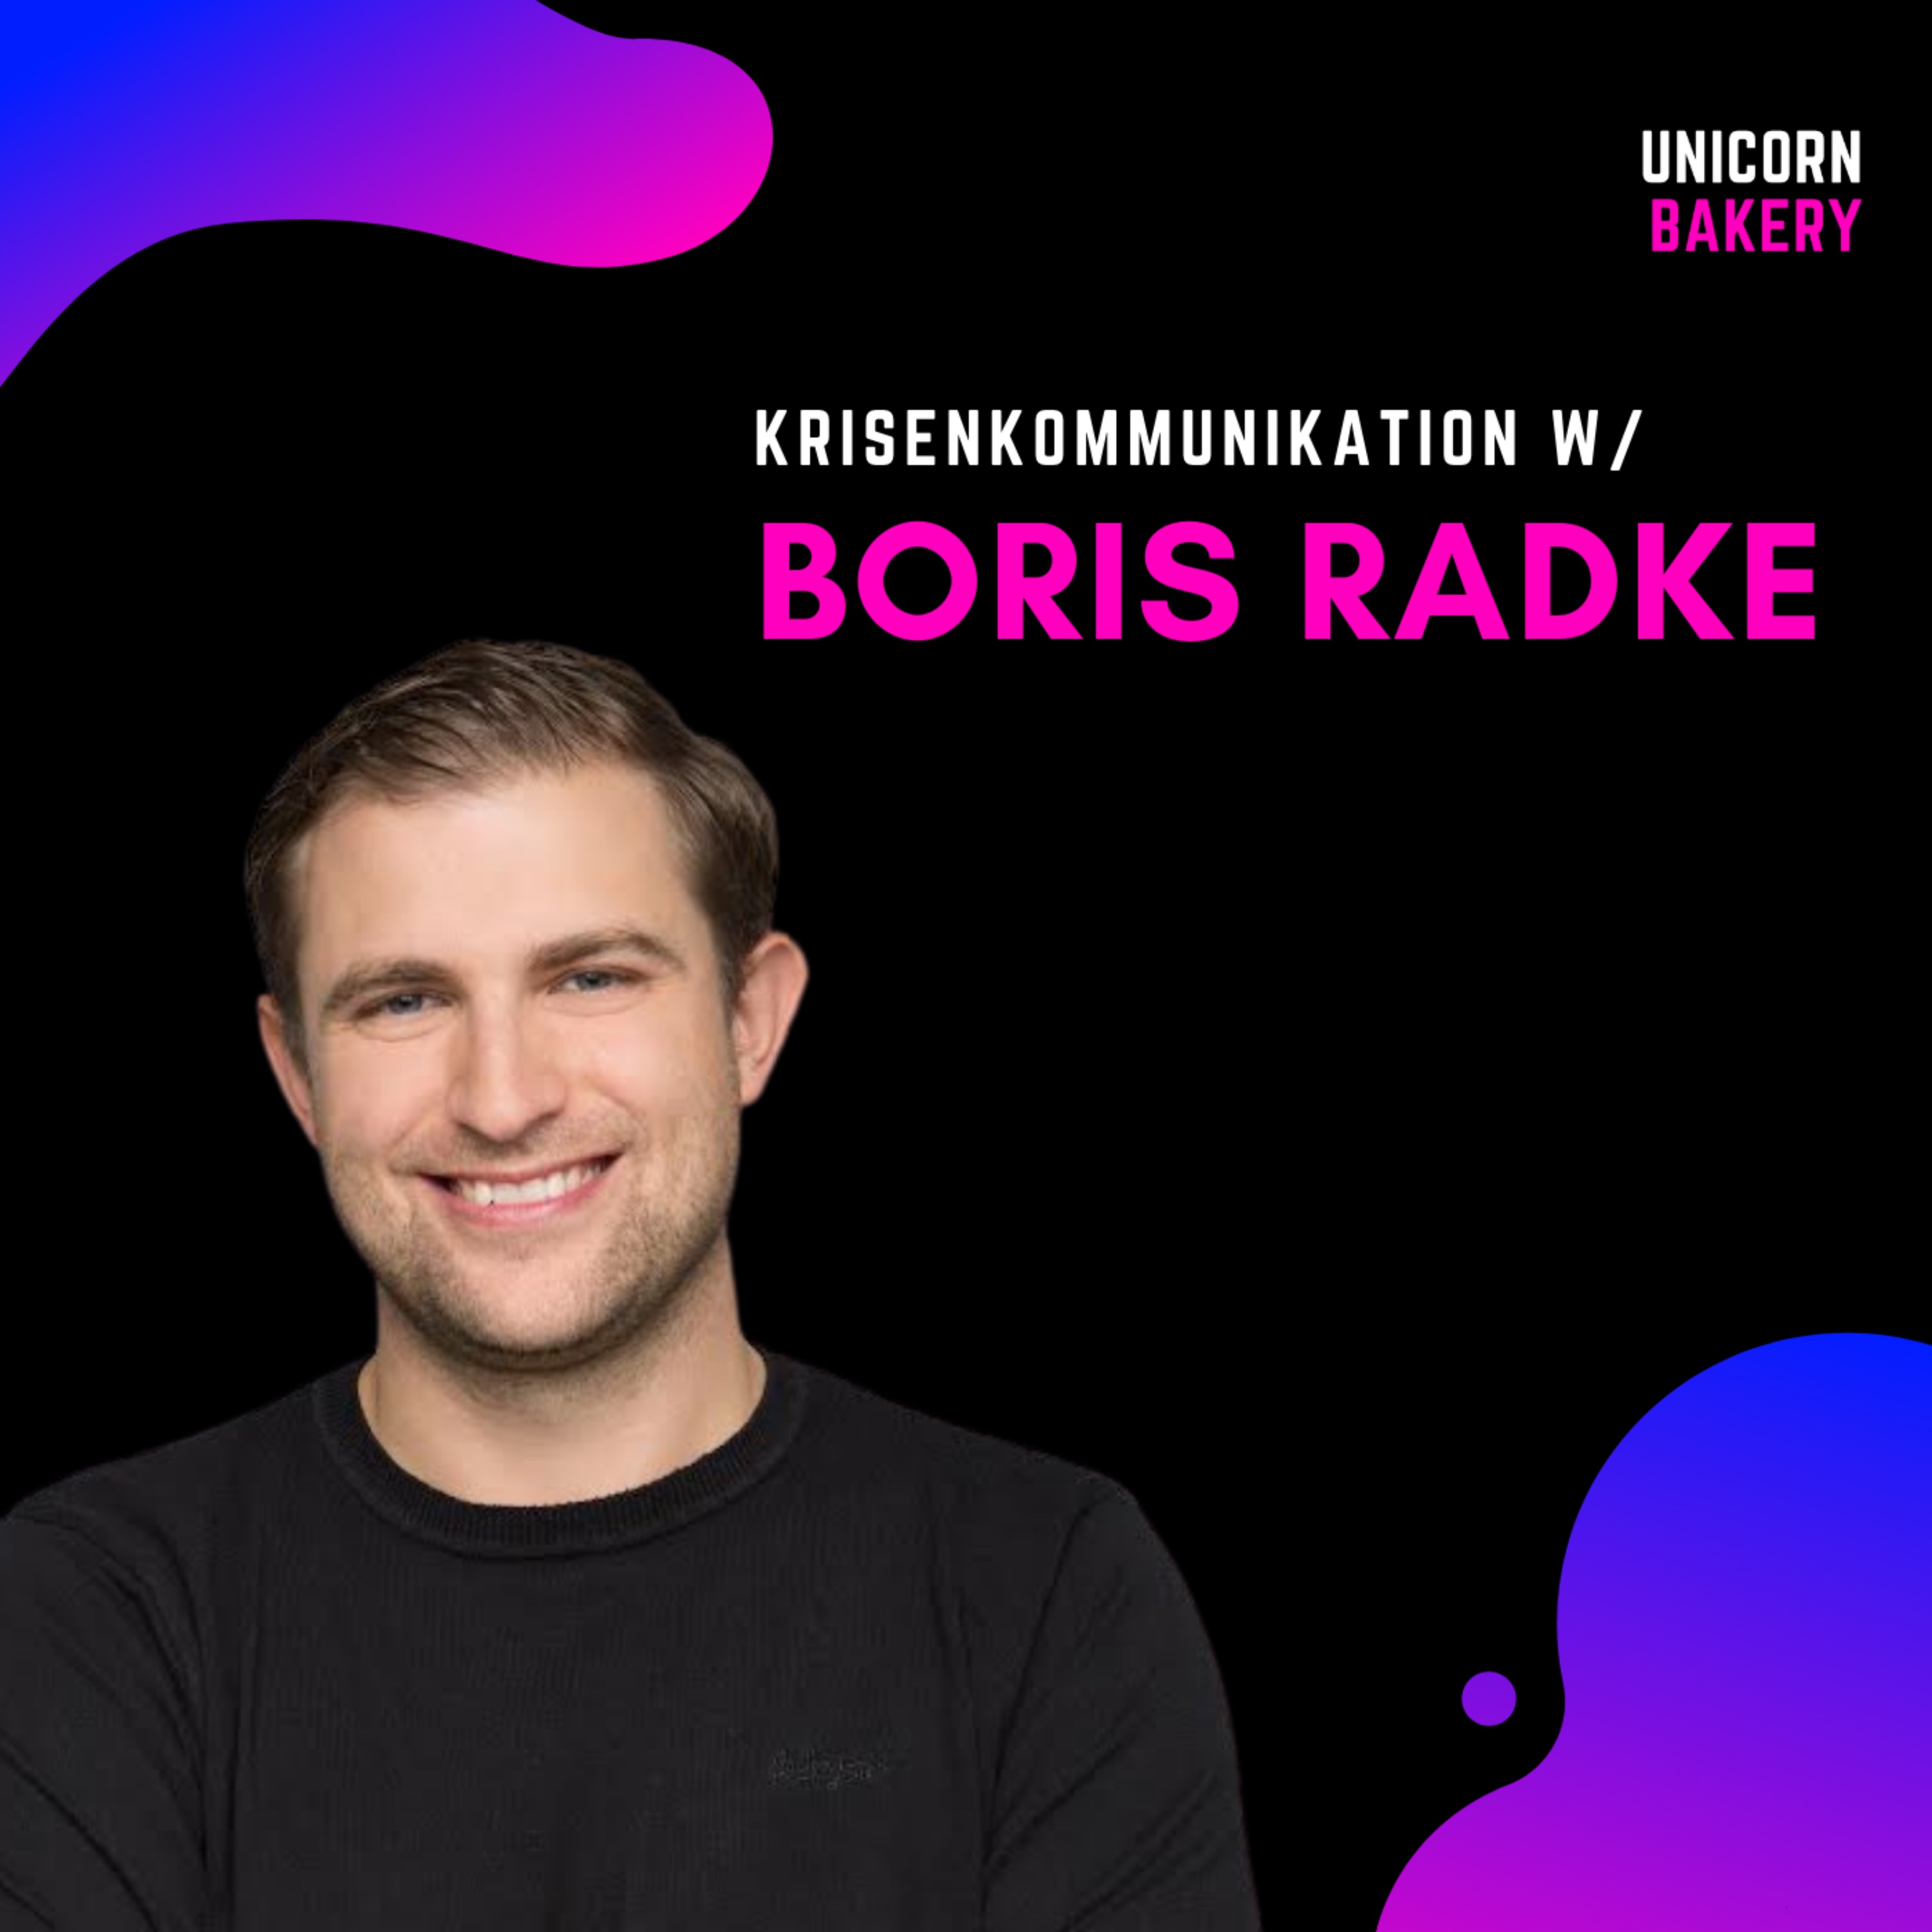 Krisenkommunikation in Startups und Unternehmen: So gehst du vor – Boris Radke Image